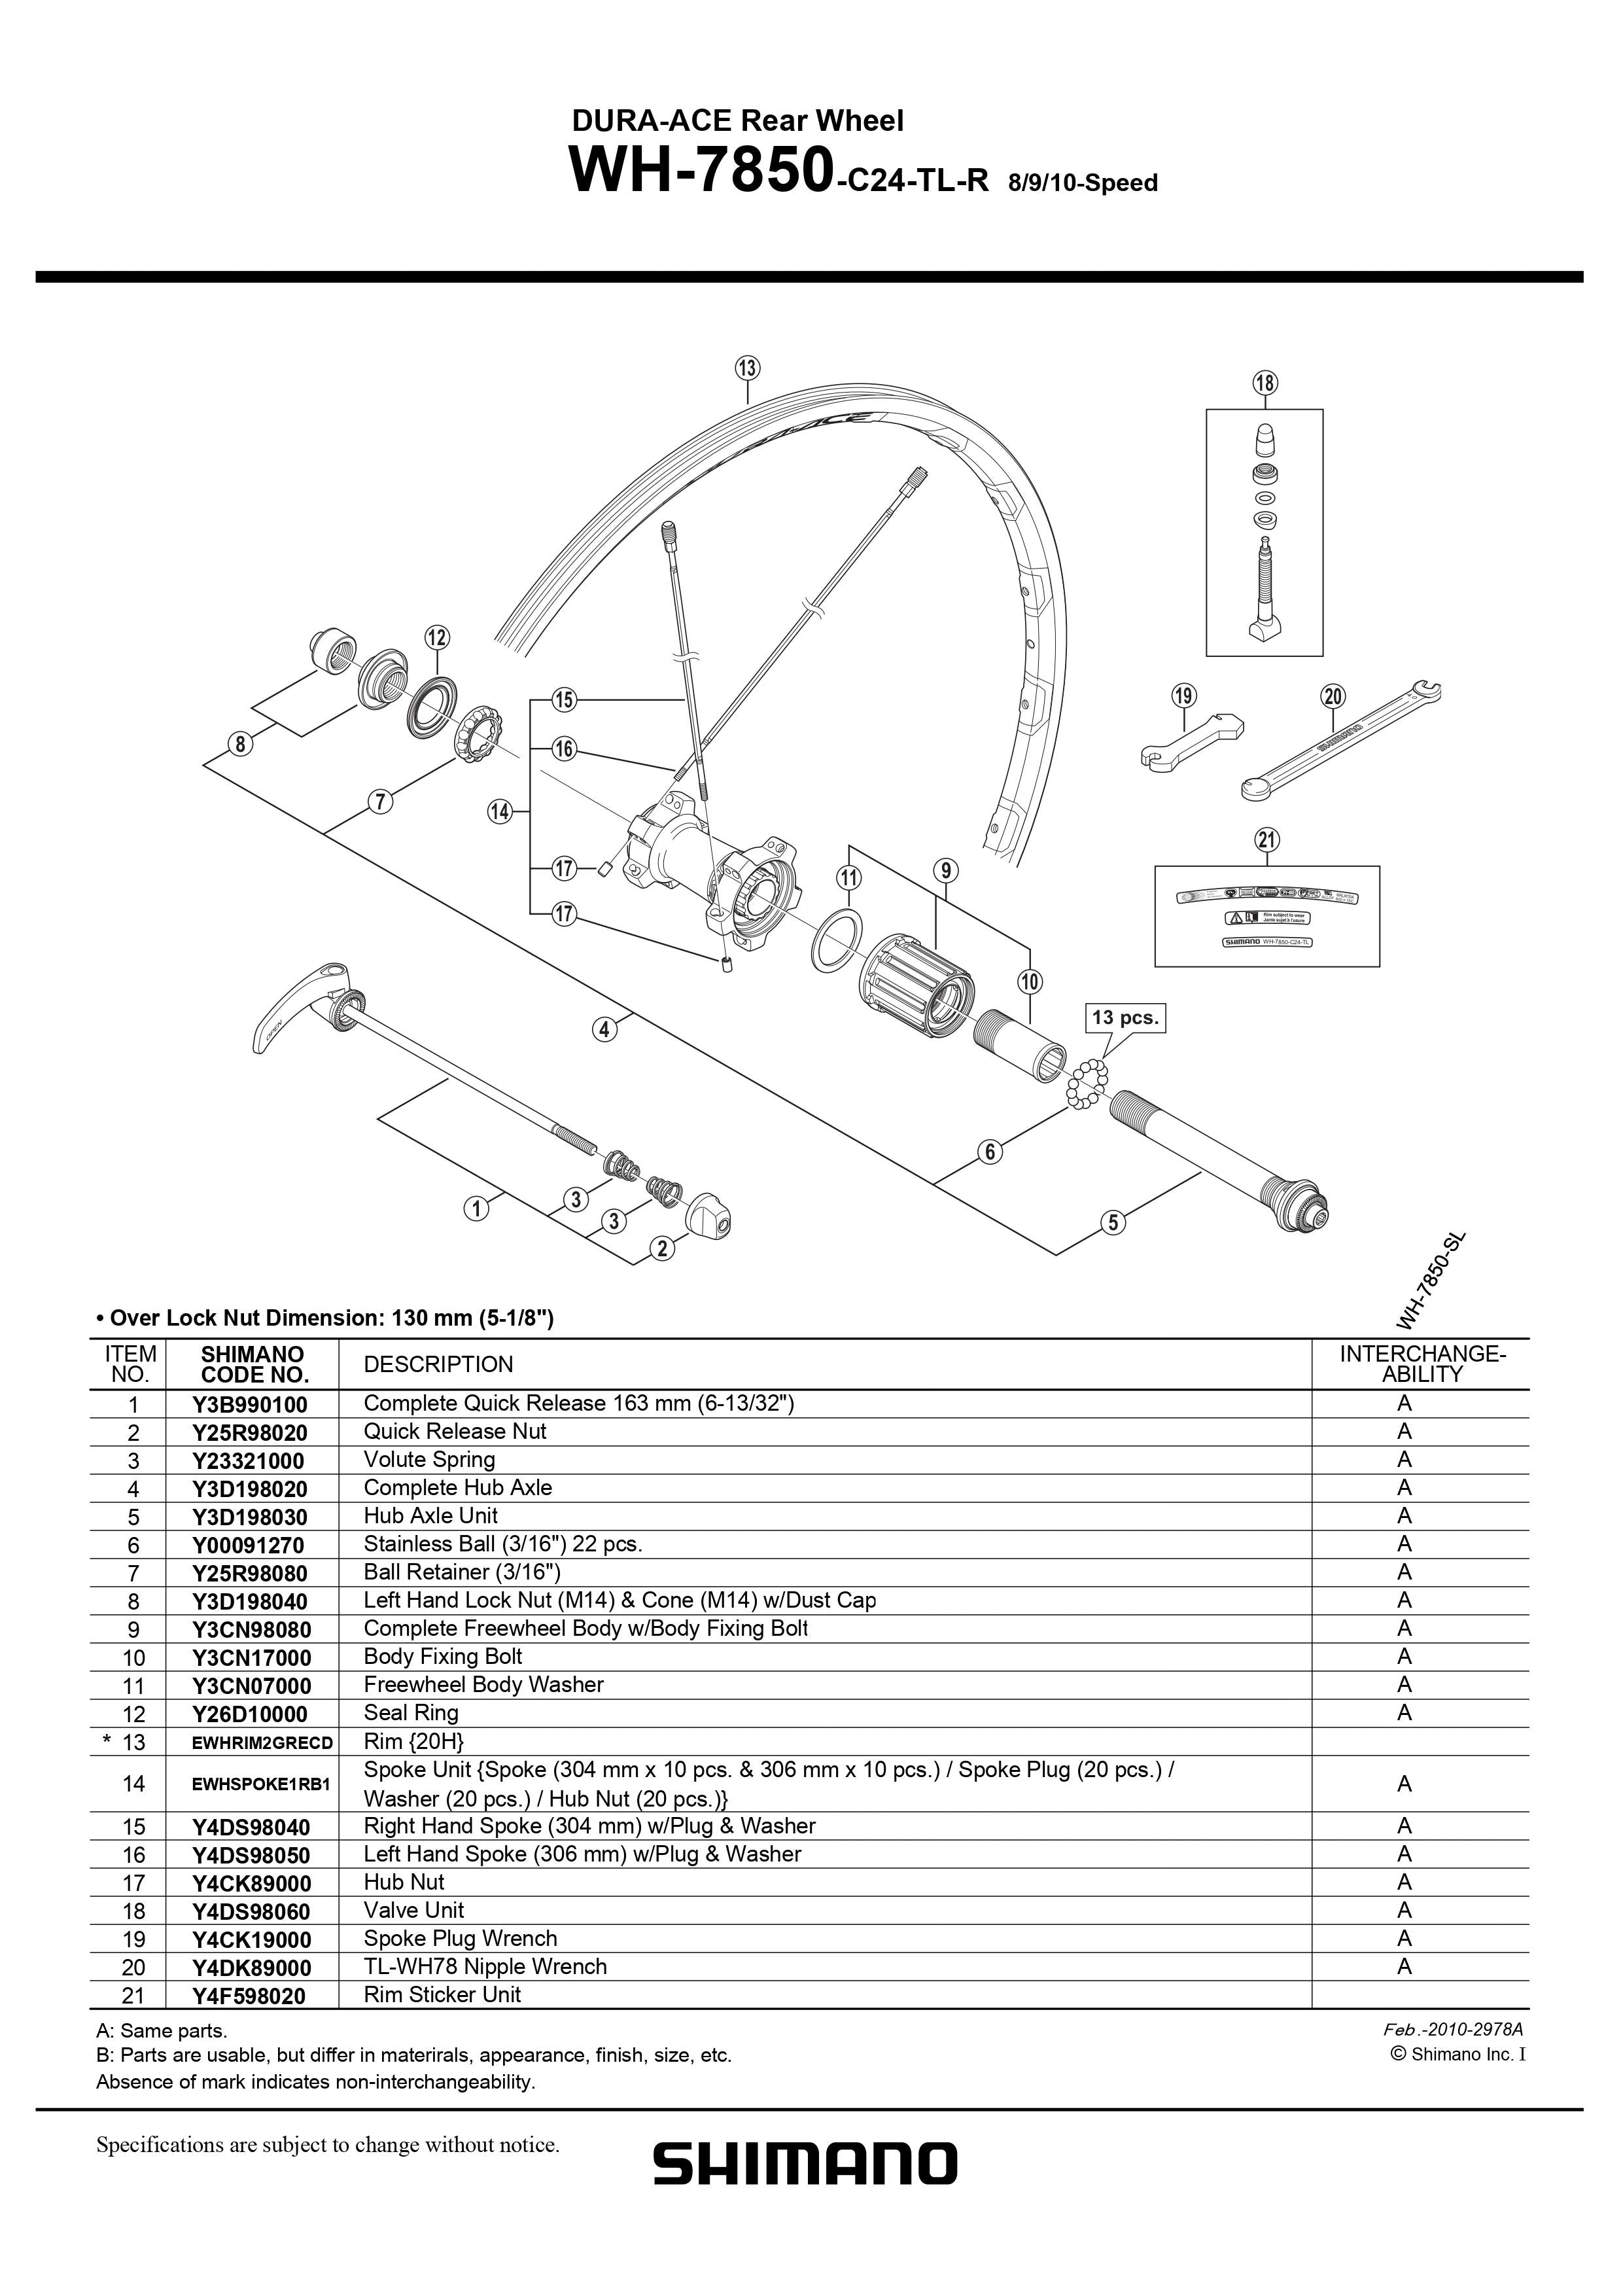 SHIMANO Dura-Ace WH-7850-C24-TL-R Rear Wheel Valve Unit - (8/9/10-Speed) -  Y4DS98060